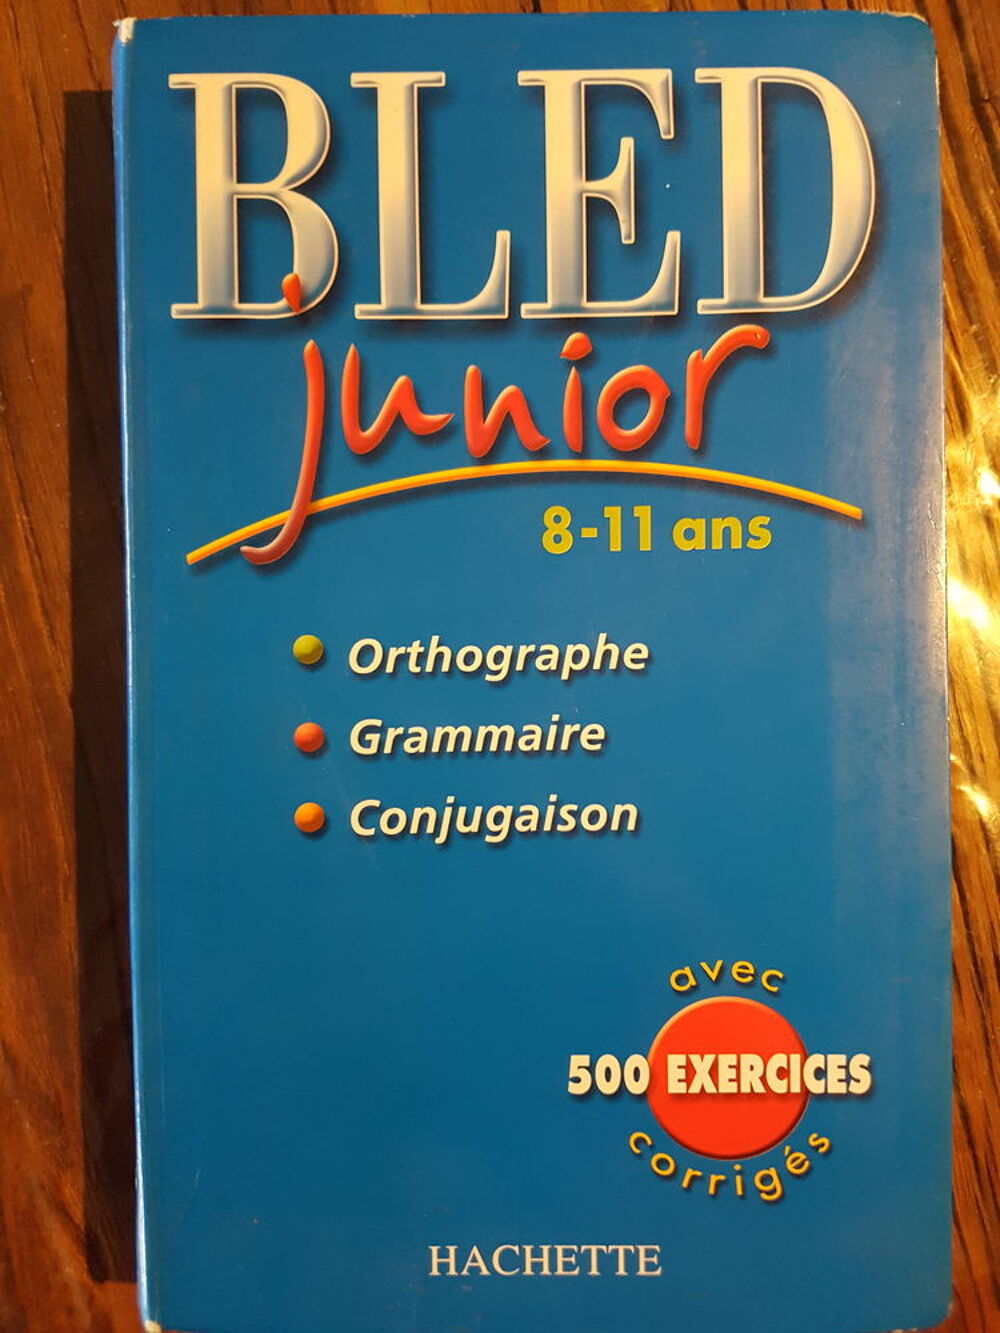 BLED Junior 8 -11 ans Hachette Livres et BD